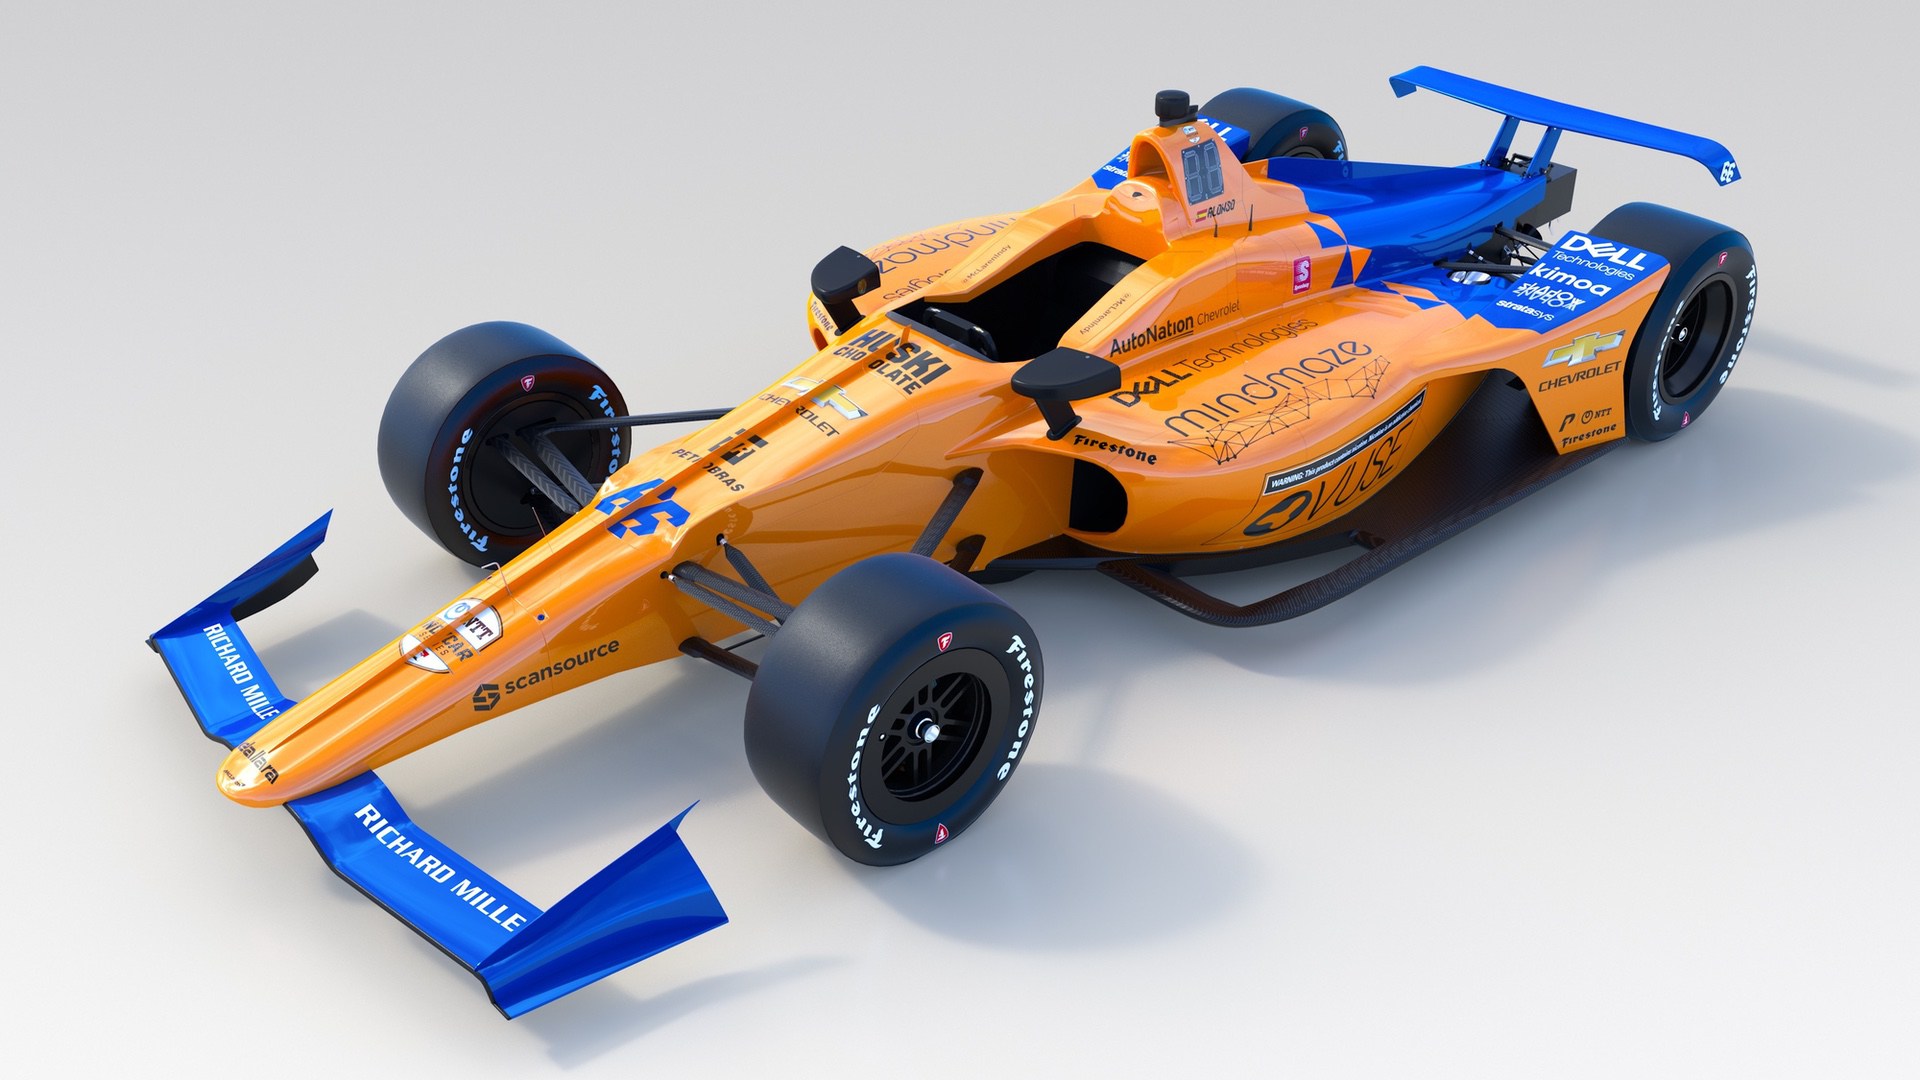 2019 McLaren Indy500 car